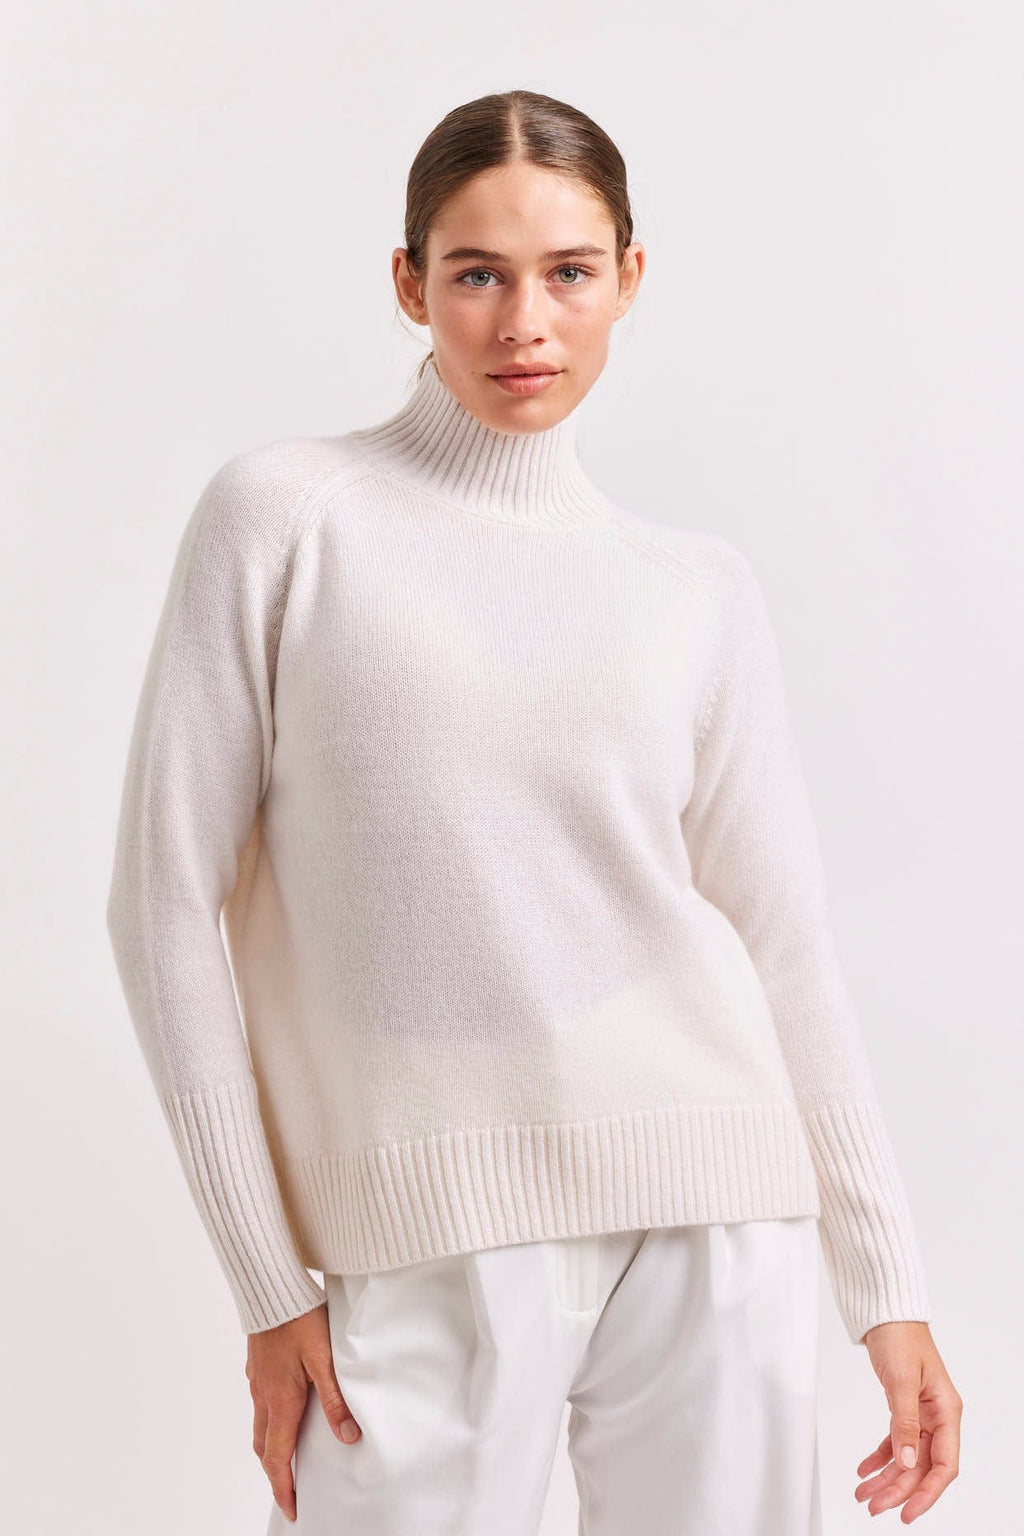 Alessandra Fifi Polo Cashmere Sweater in White